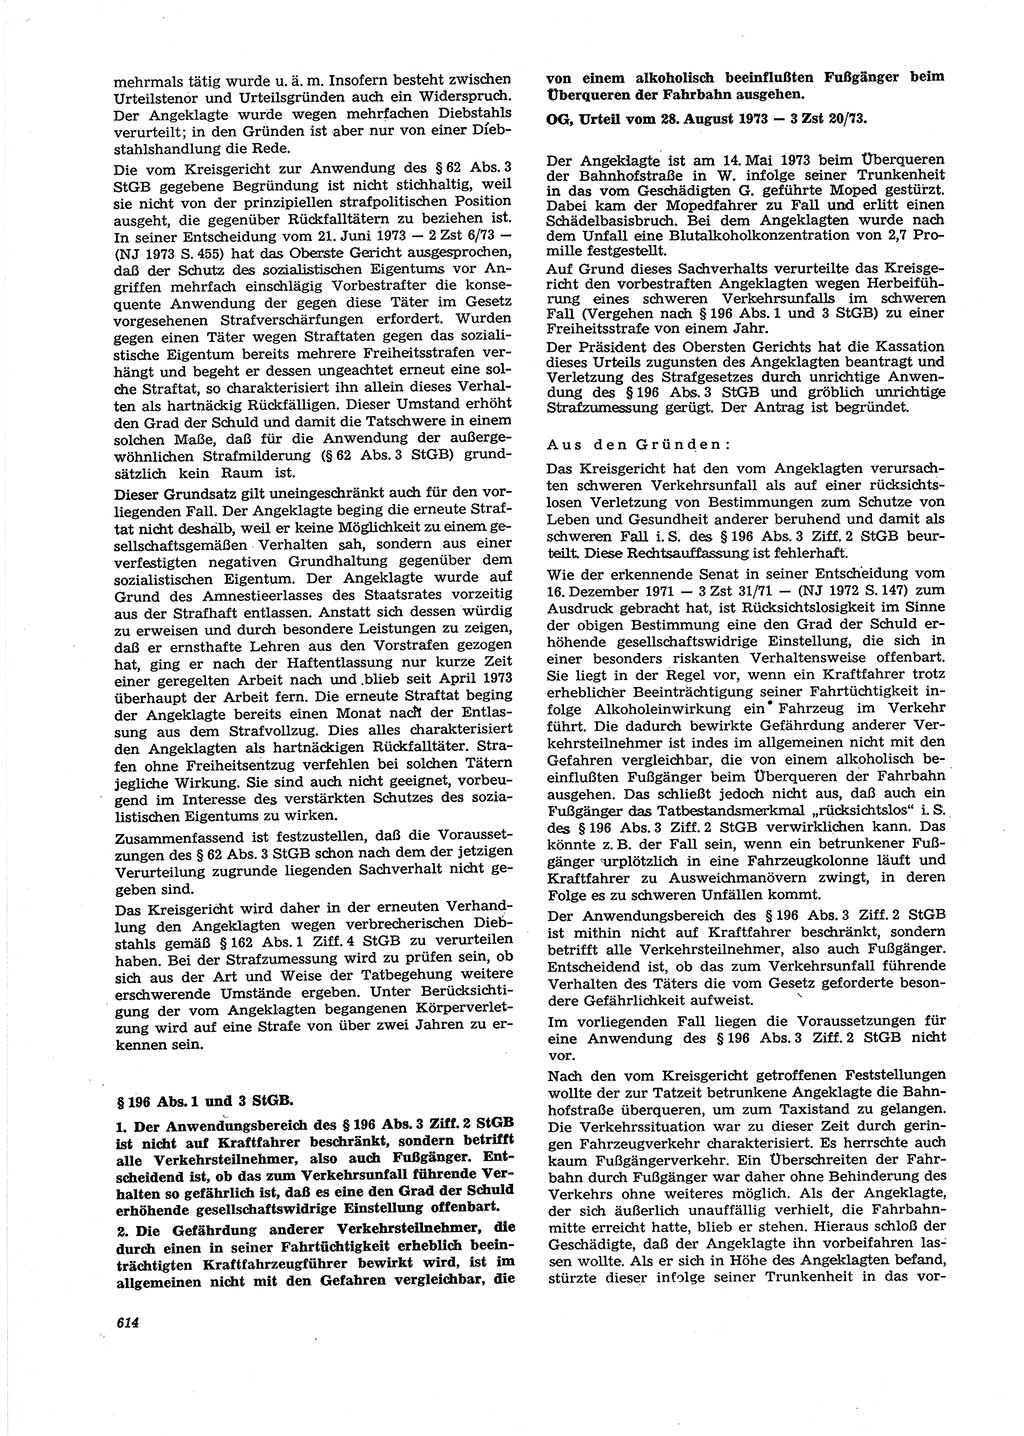 Neue Justiz (NJ), Zeitschrift für Recht und Rechtswissenschaft [Deutsche Demokratische Republik (DDR)], 27. Jahrgang 1973, Seite 614 (NJ DDR 1973, S. 614)